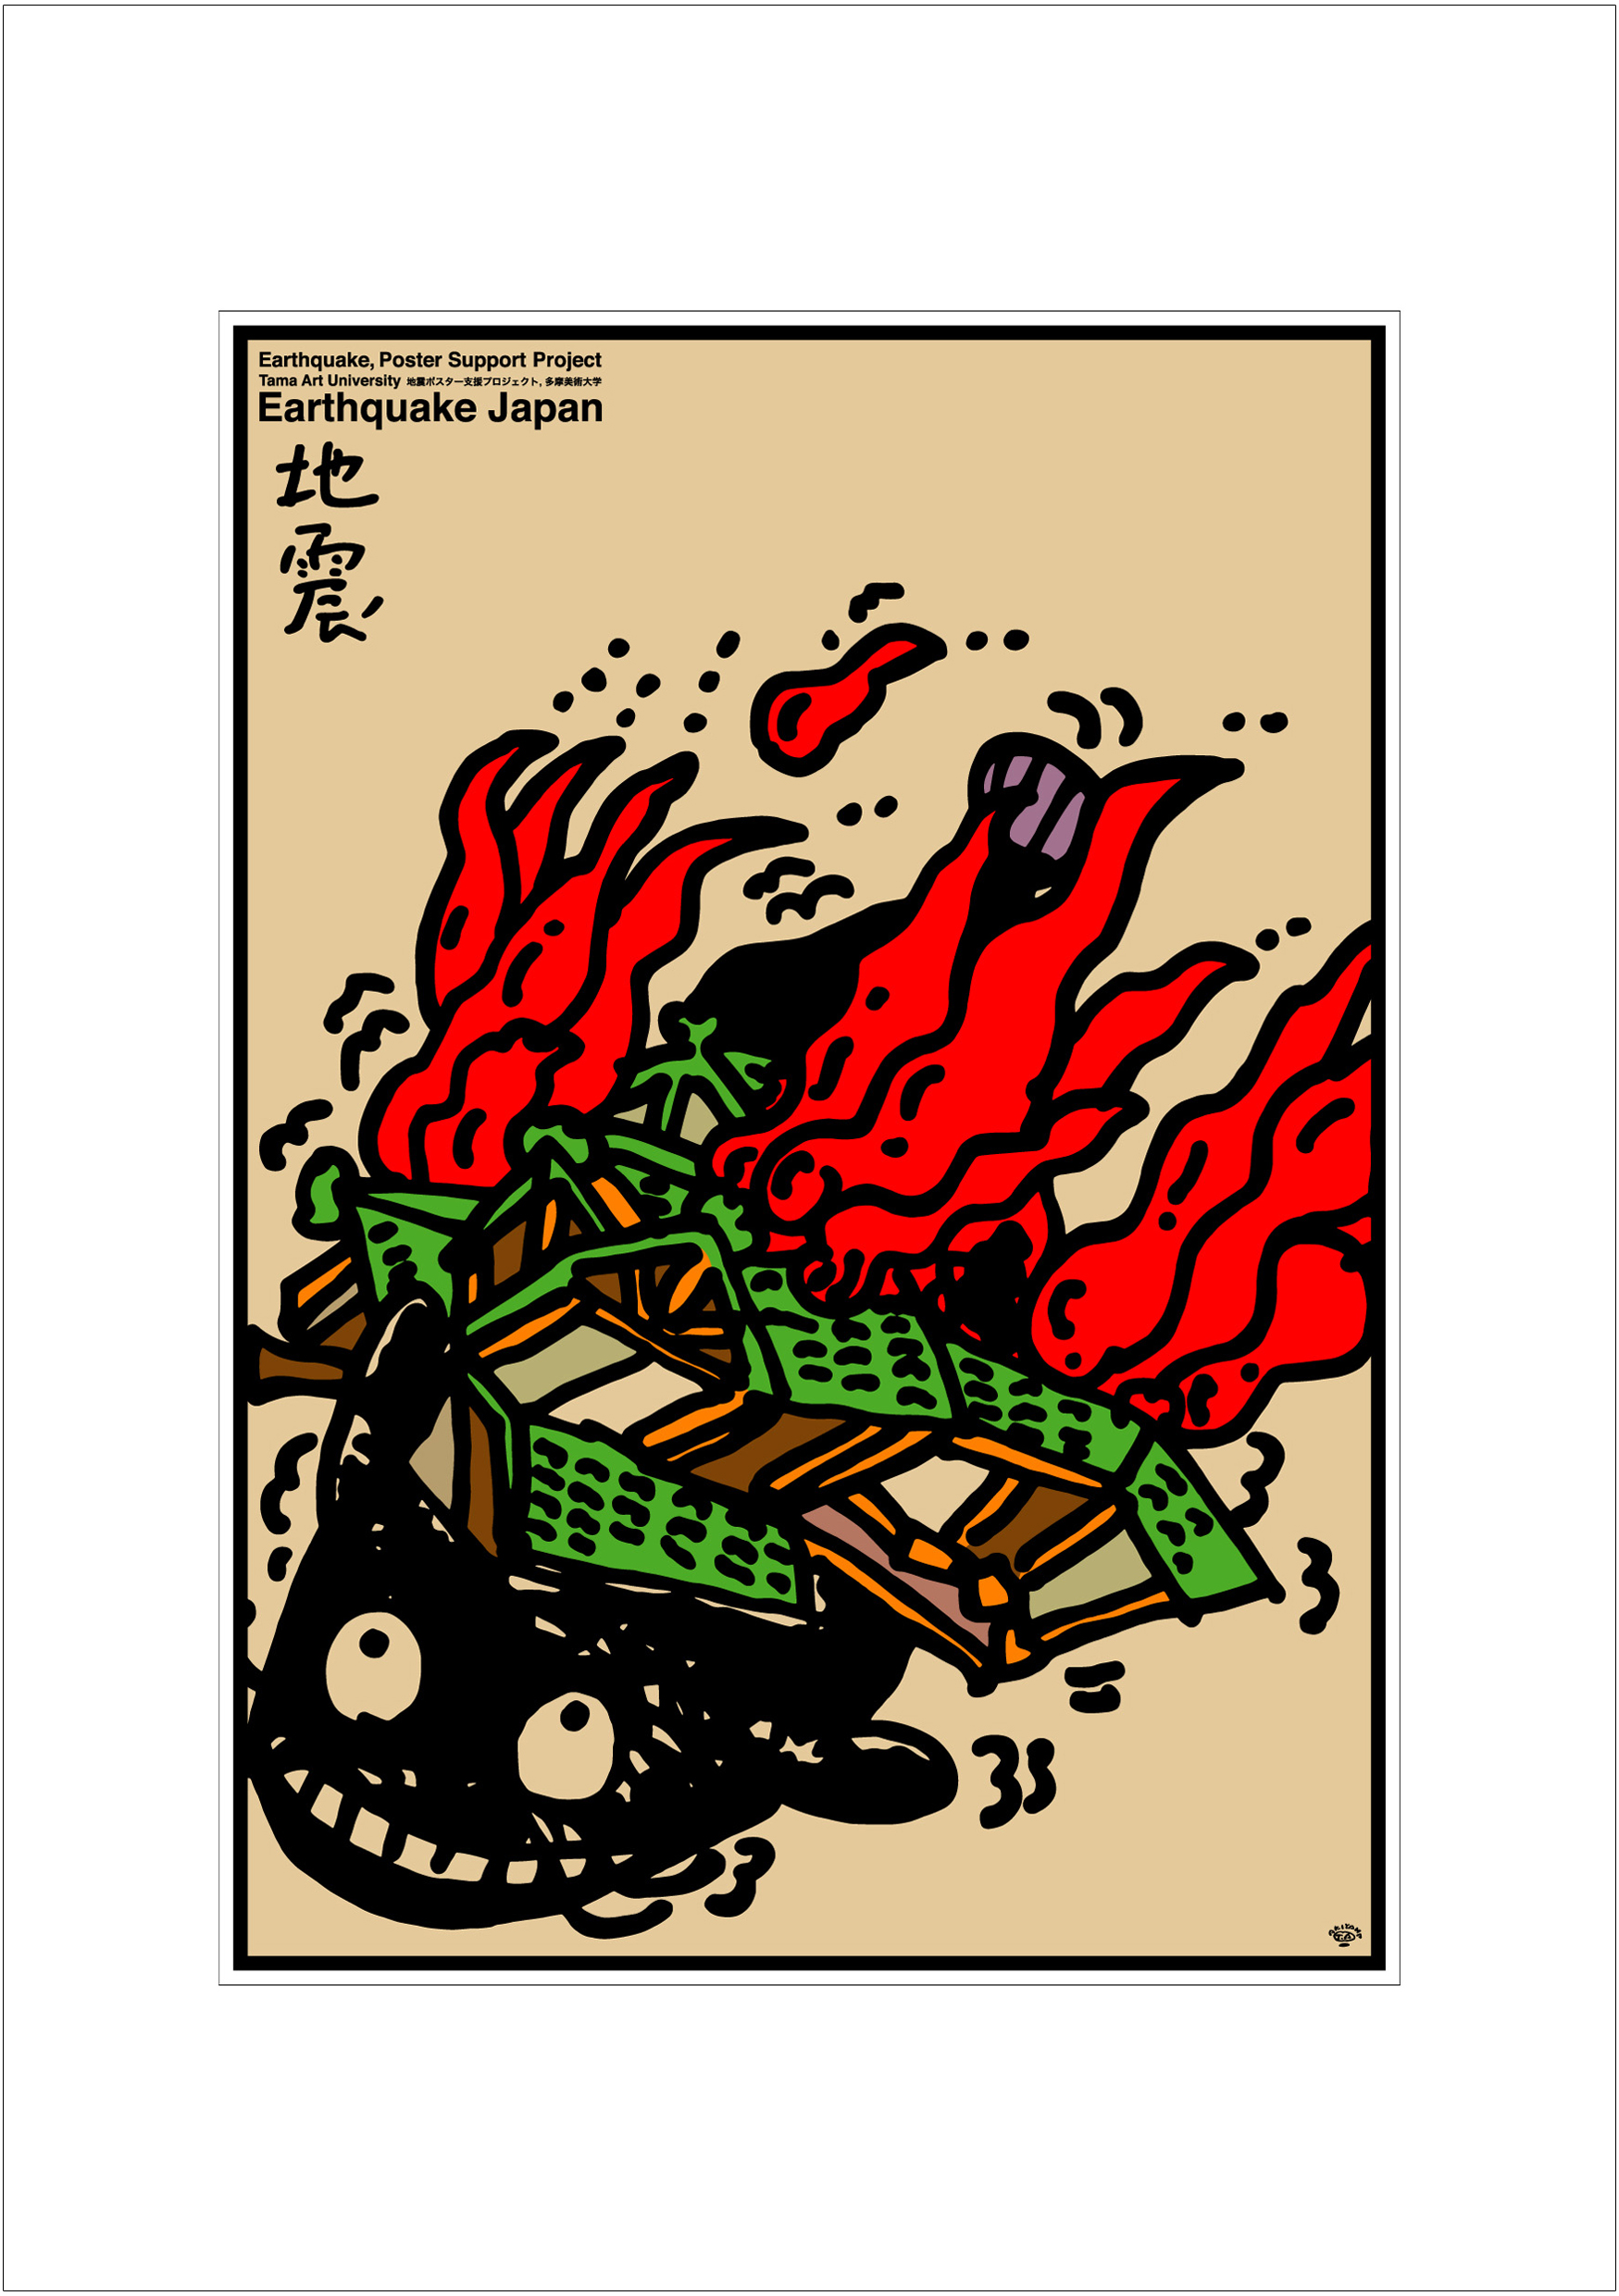 ポスターアーティスト秋山孝が2008年に制作したアートカード「アートカード ポスター 2008 1」